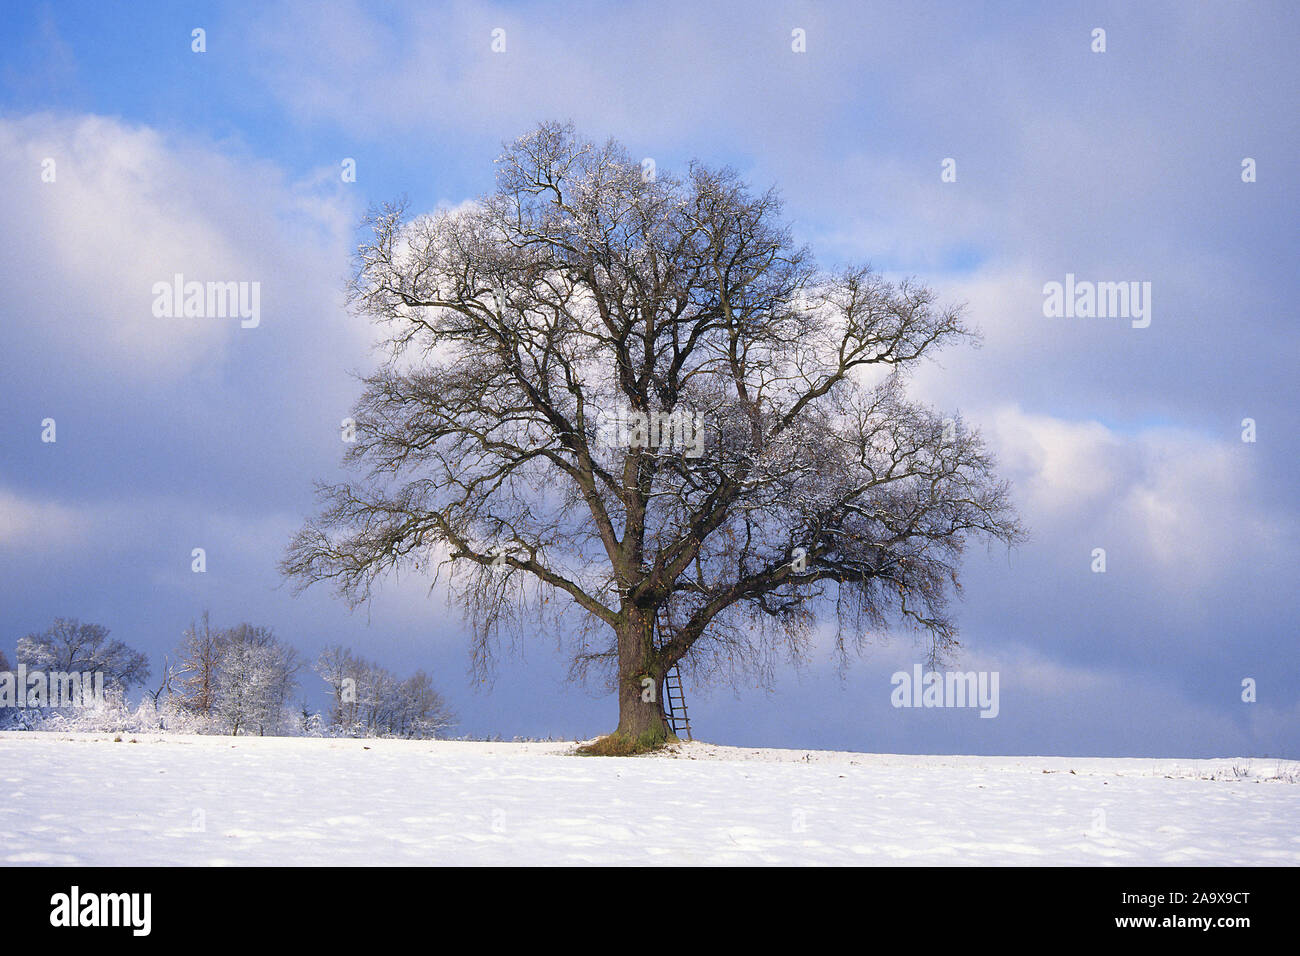 Stieleiche im Winter - Quercus robur Banque D'Images